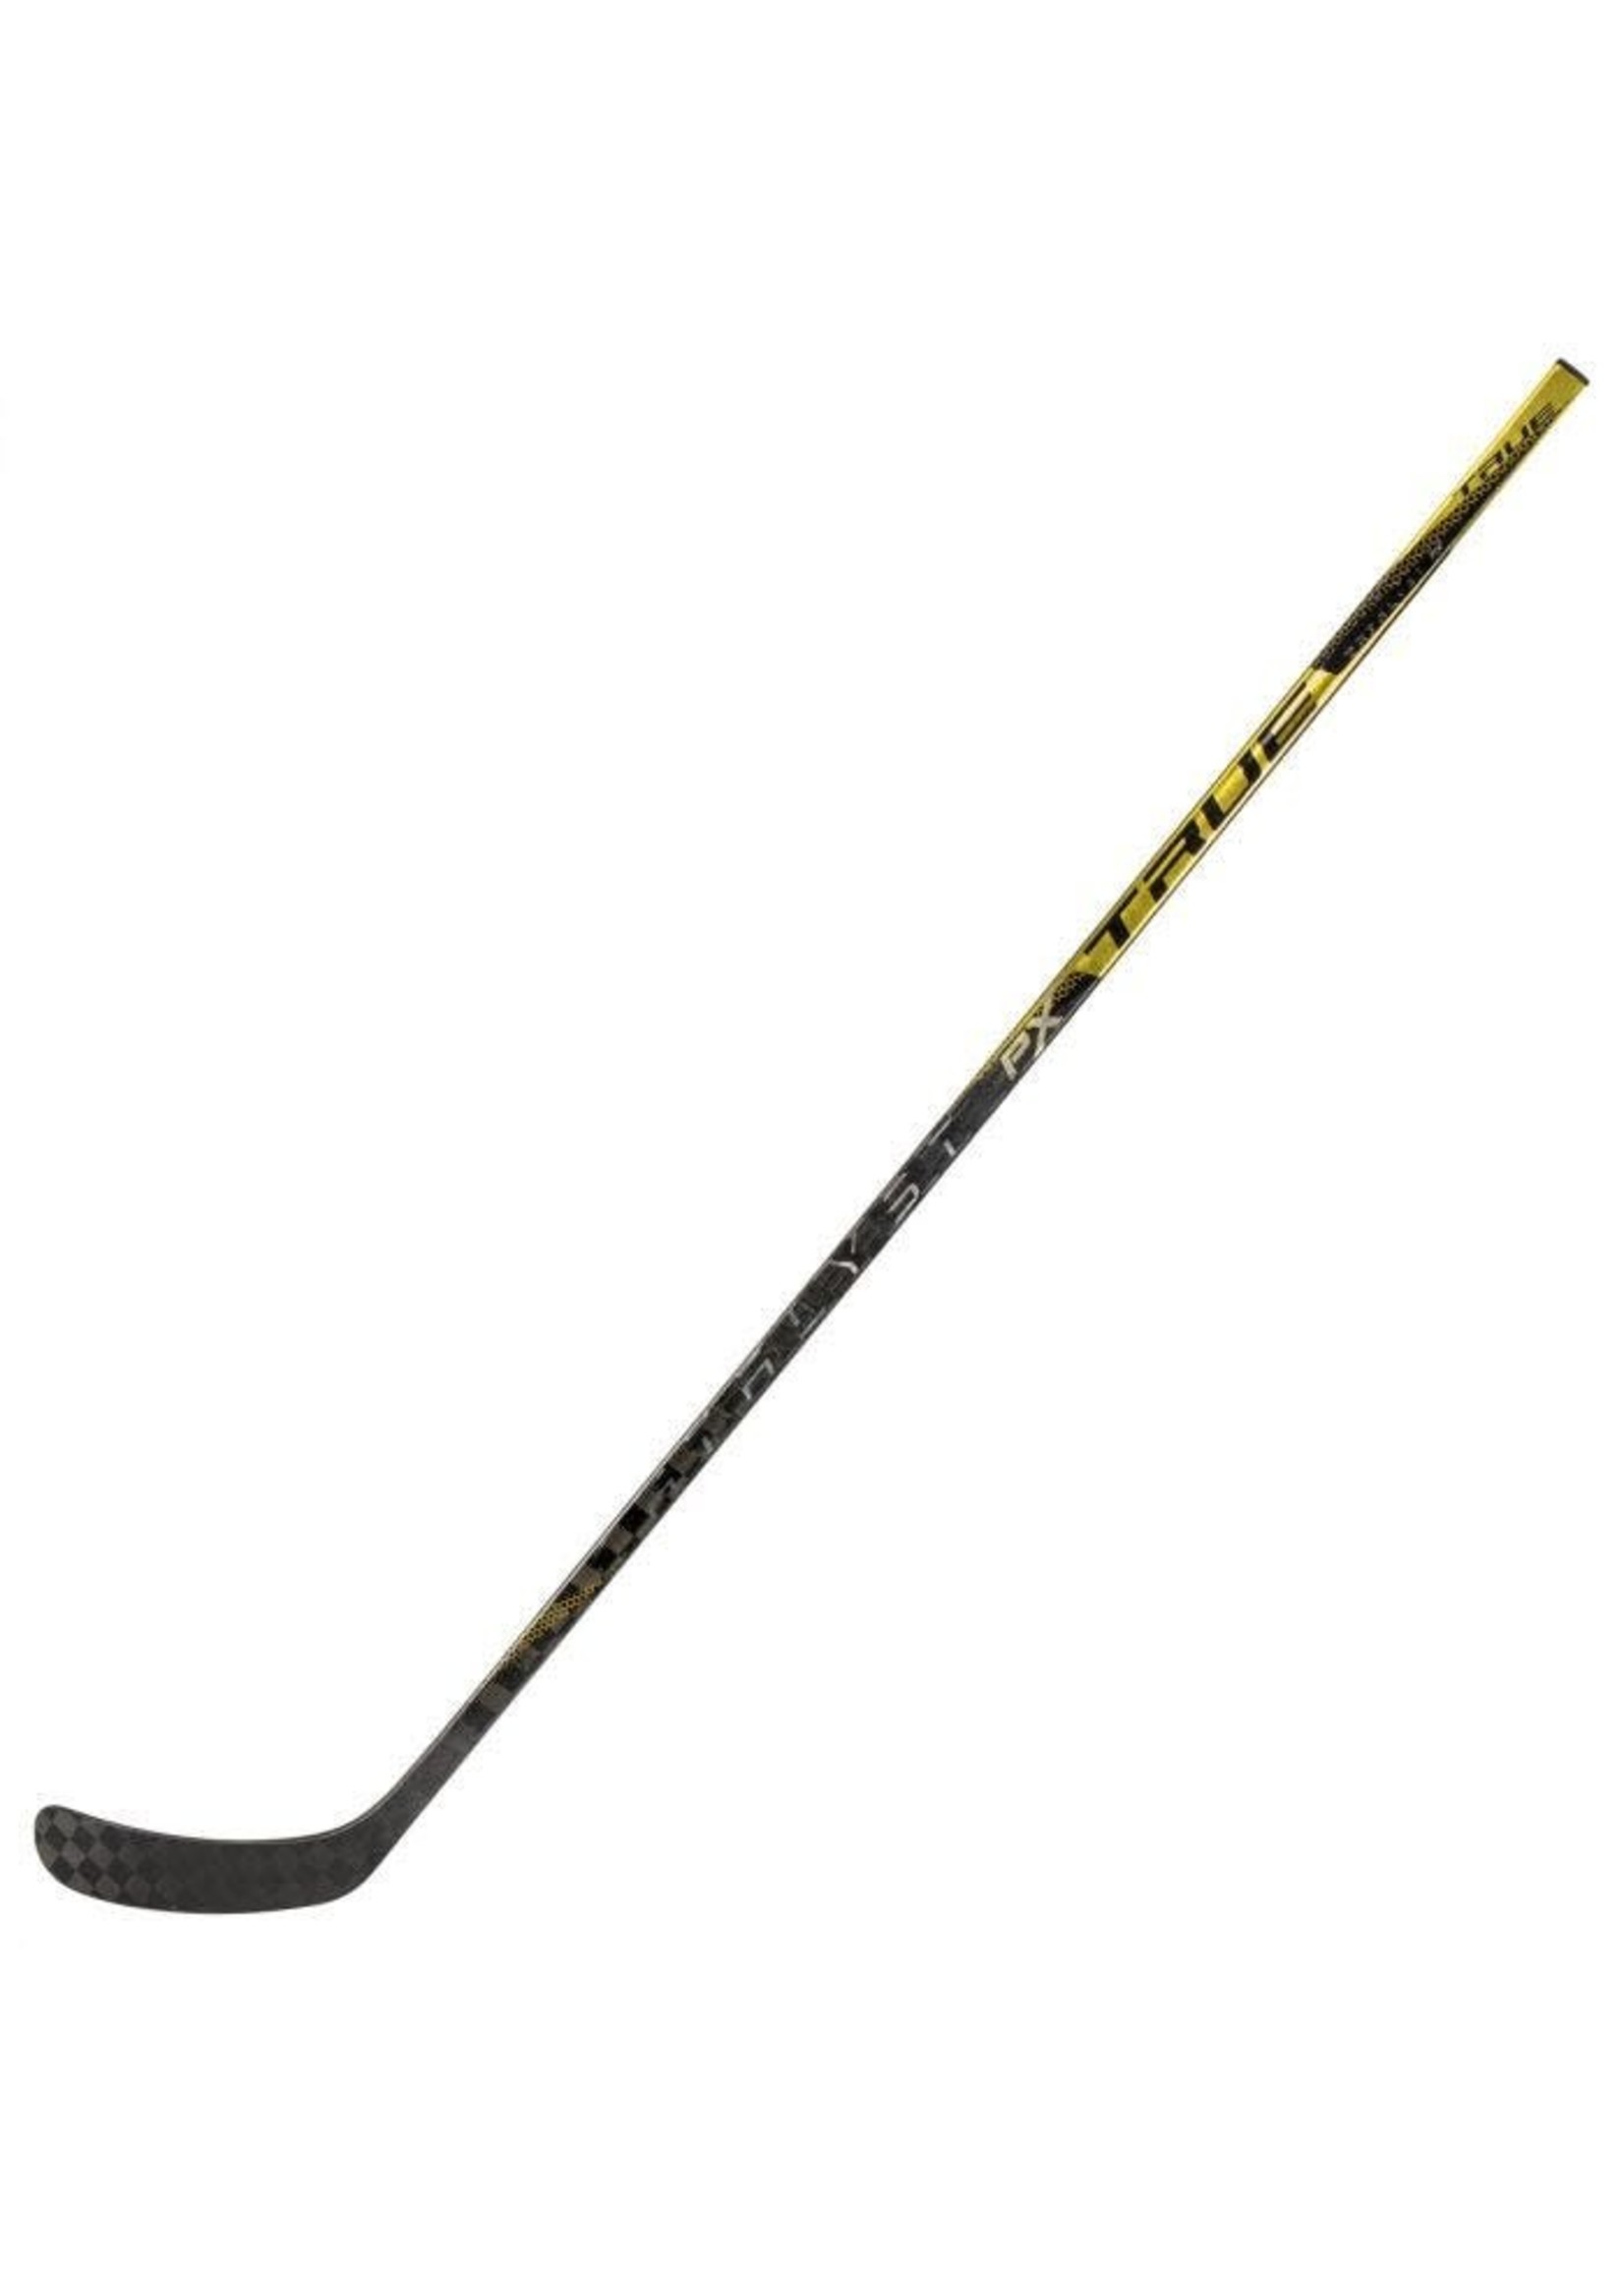 True Hockey TRUE Catalyst PX Stick - Junior